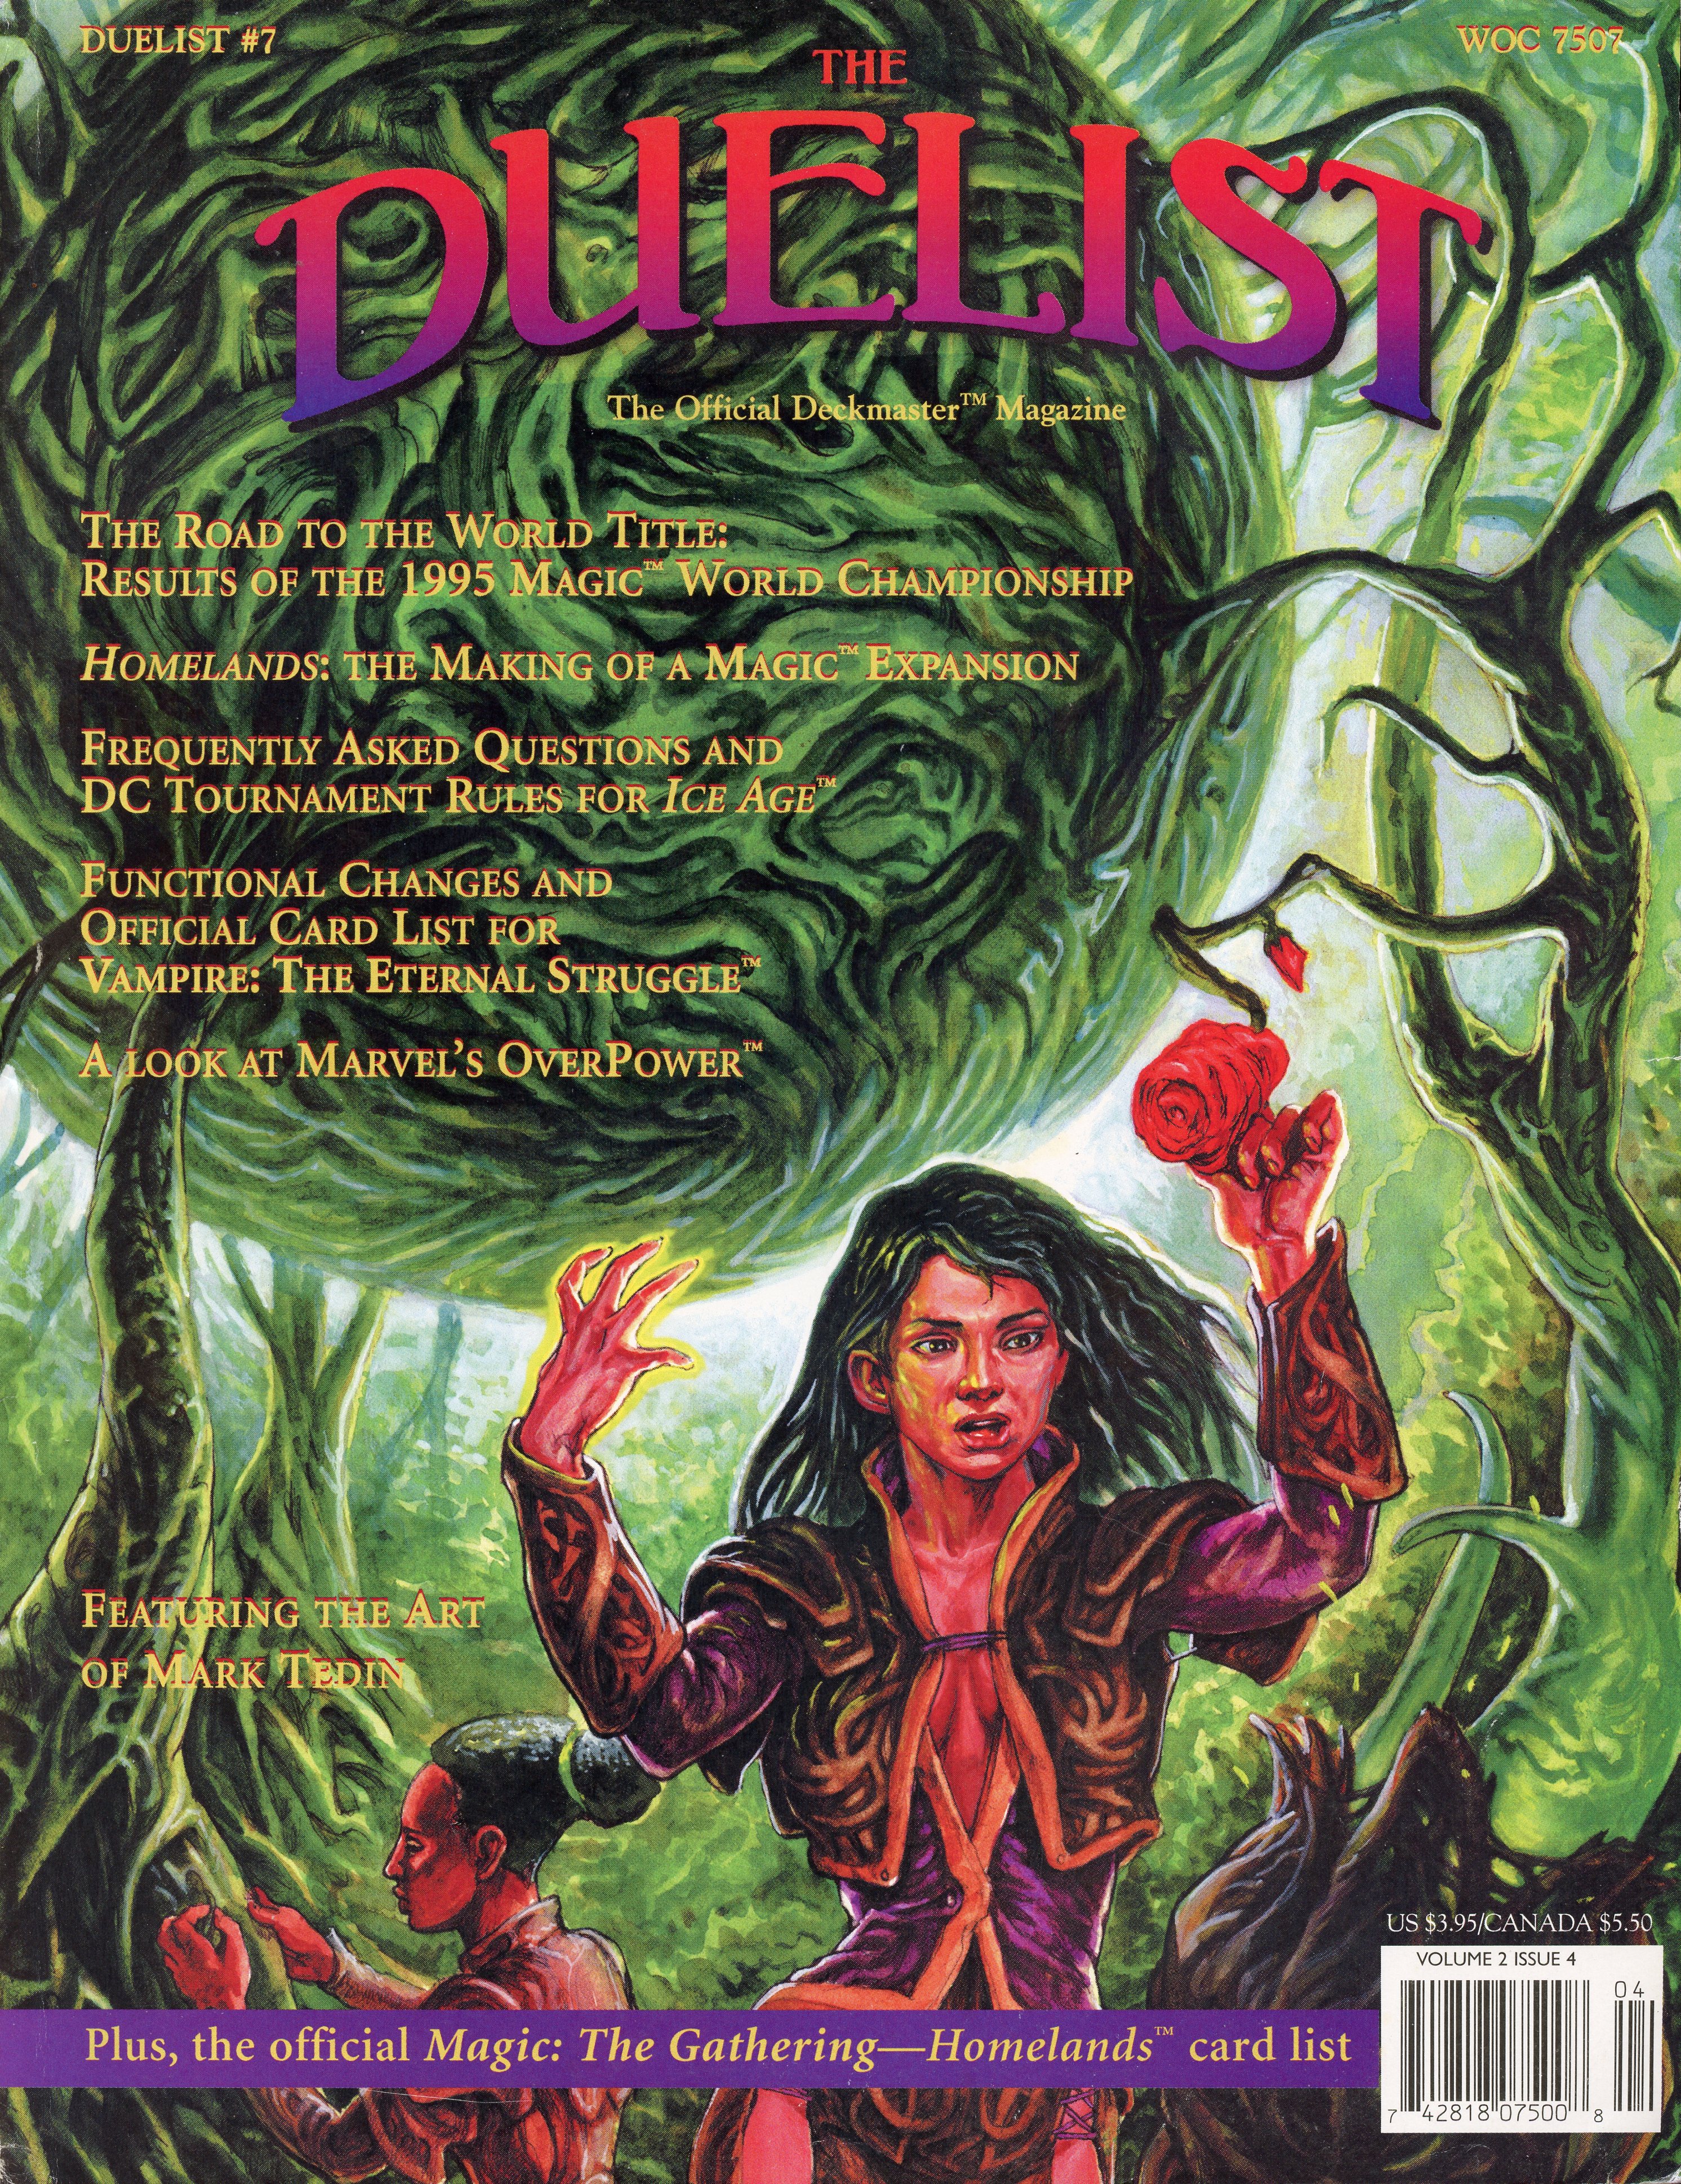 The Duelist #7, October 1995